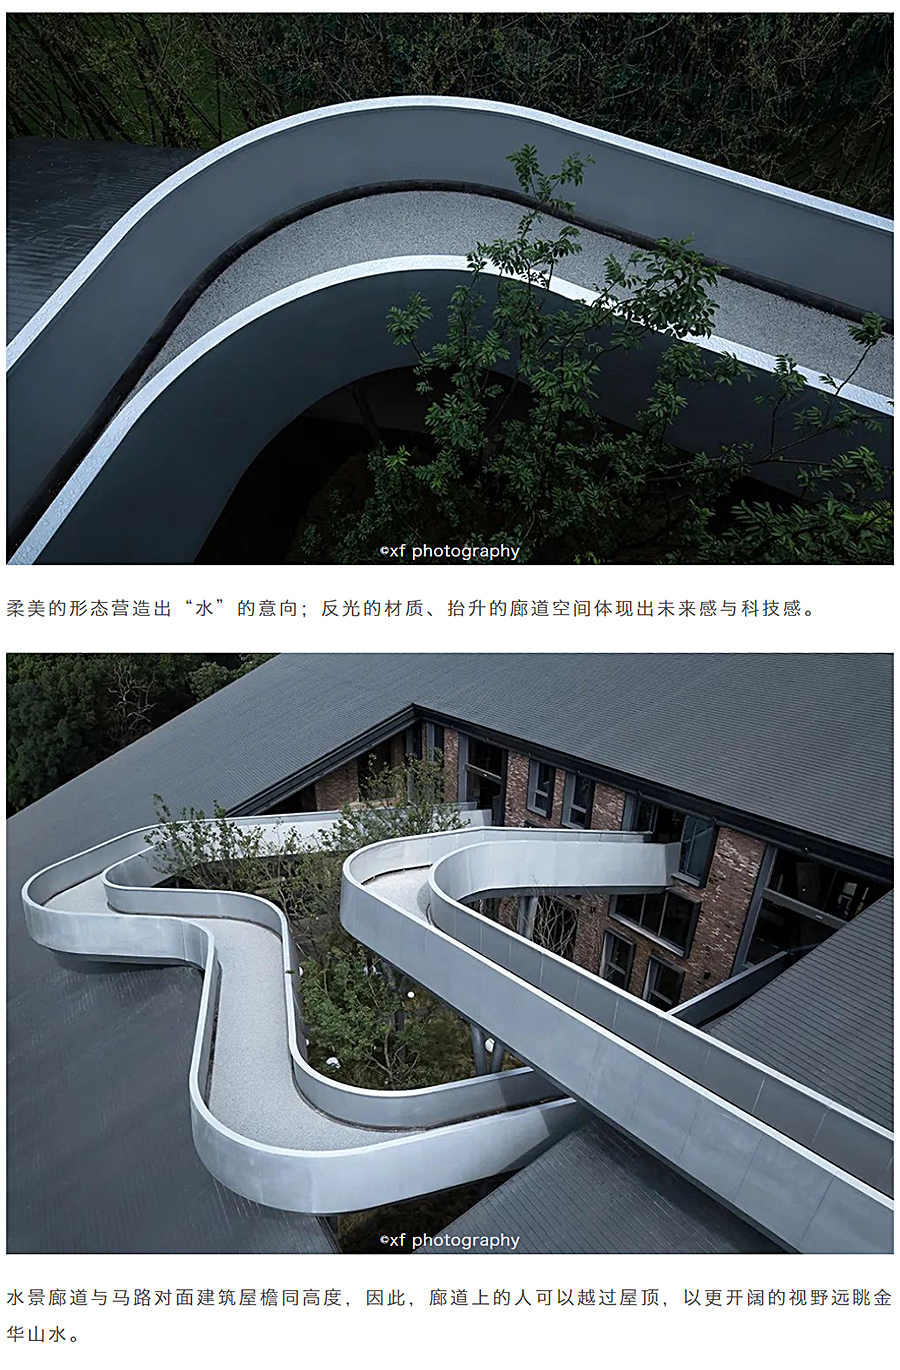 一座建筑投影一方山水-_-金华山嘴头未来社区中心_0018_图层-19.jpg